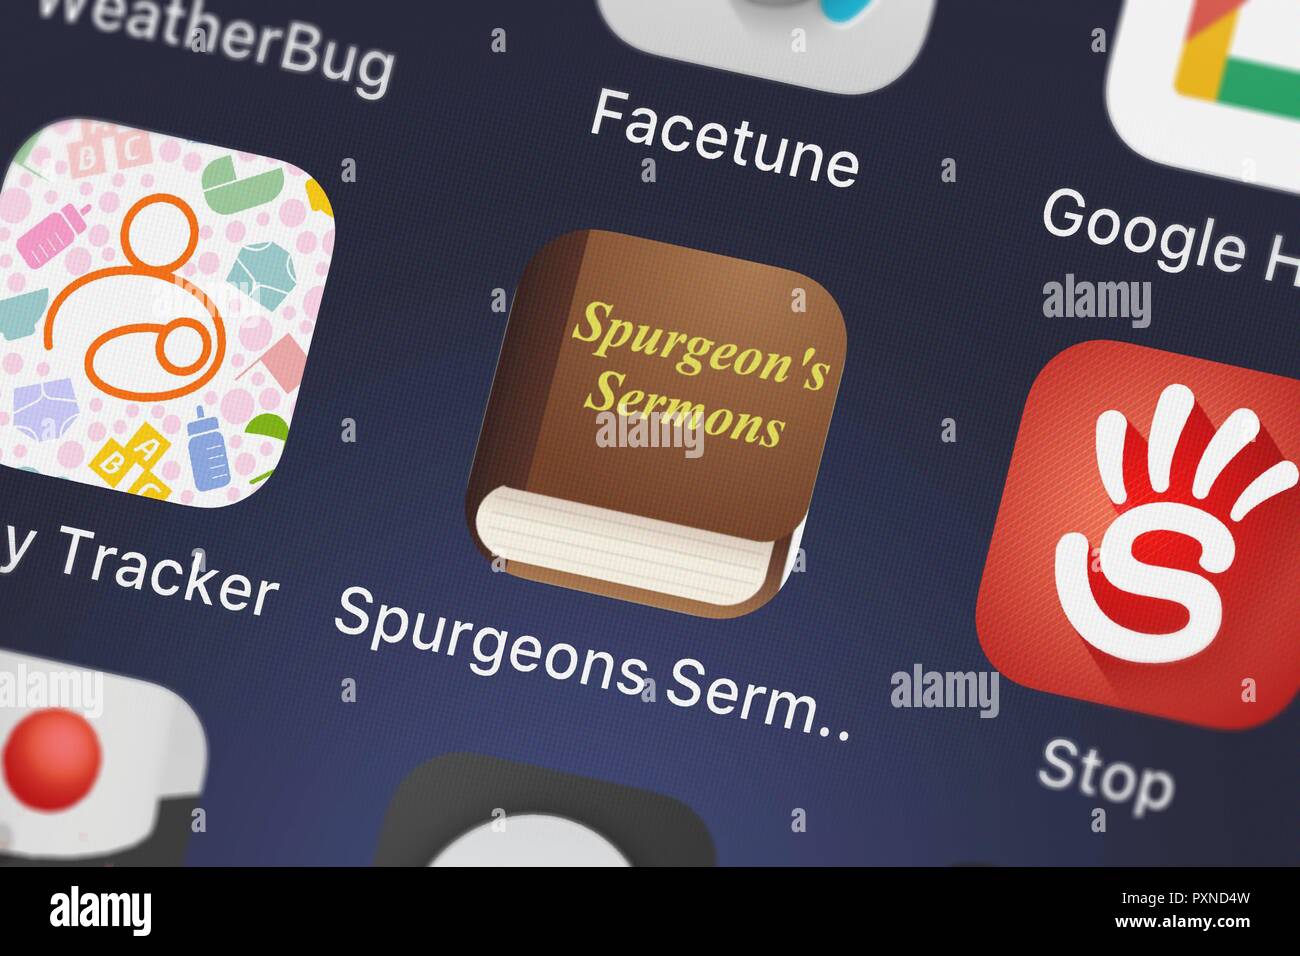 London, Regno Unito - 23 Ottobre 2018: Icona del mobile app Spurgeon sermoni in spagnolo da Oleg Shukalovich su un iPhone. Foto Stock